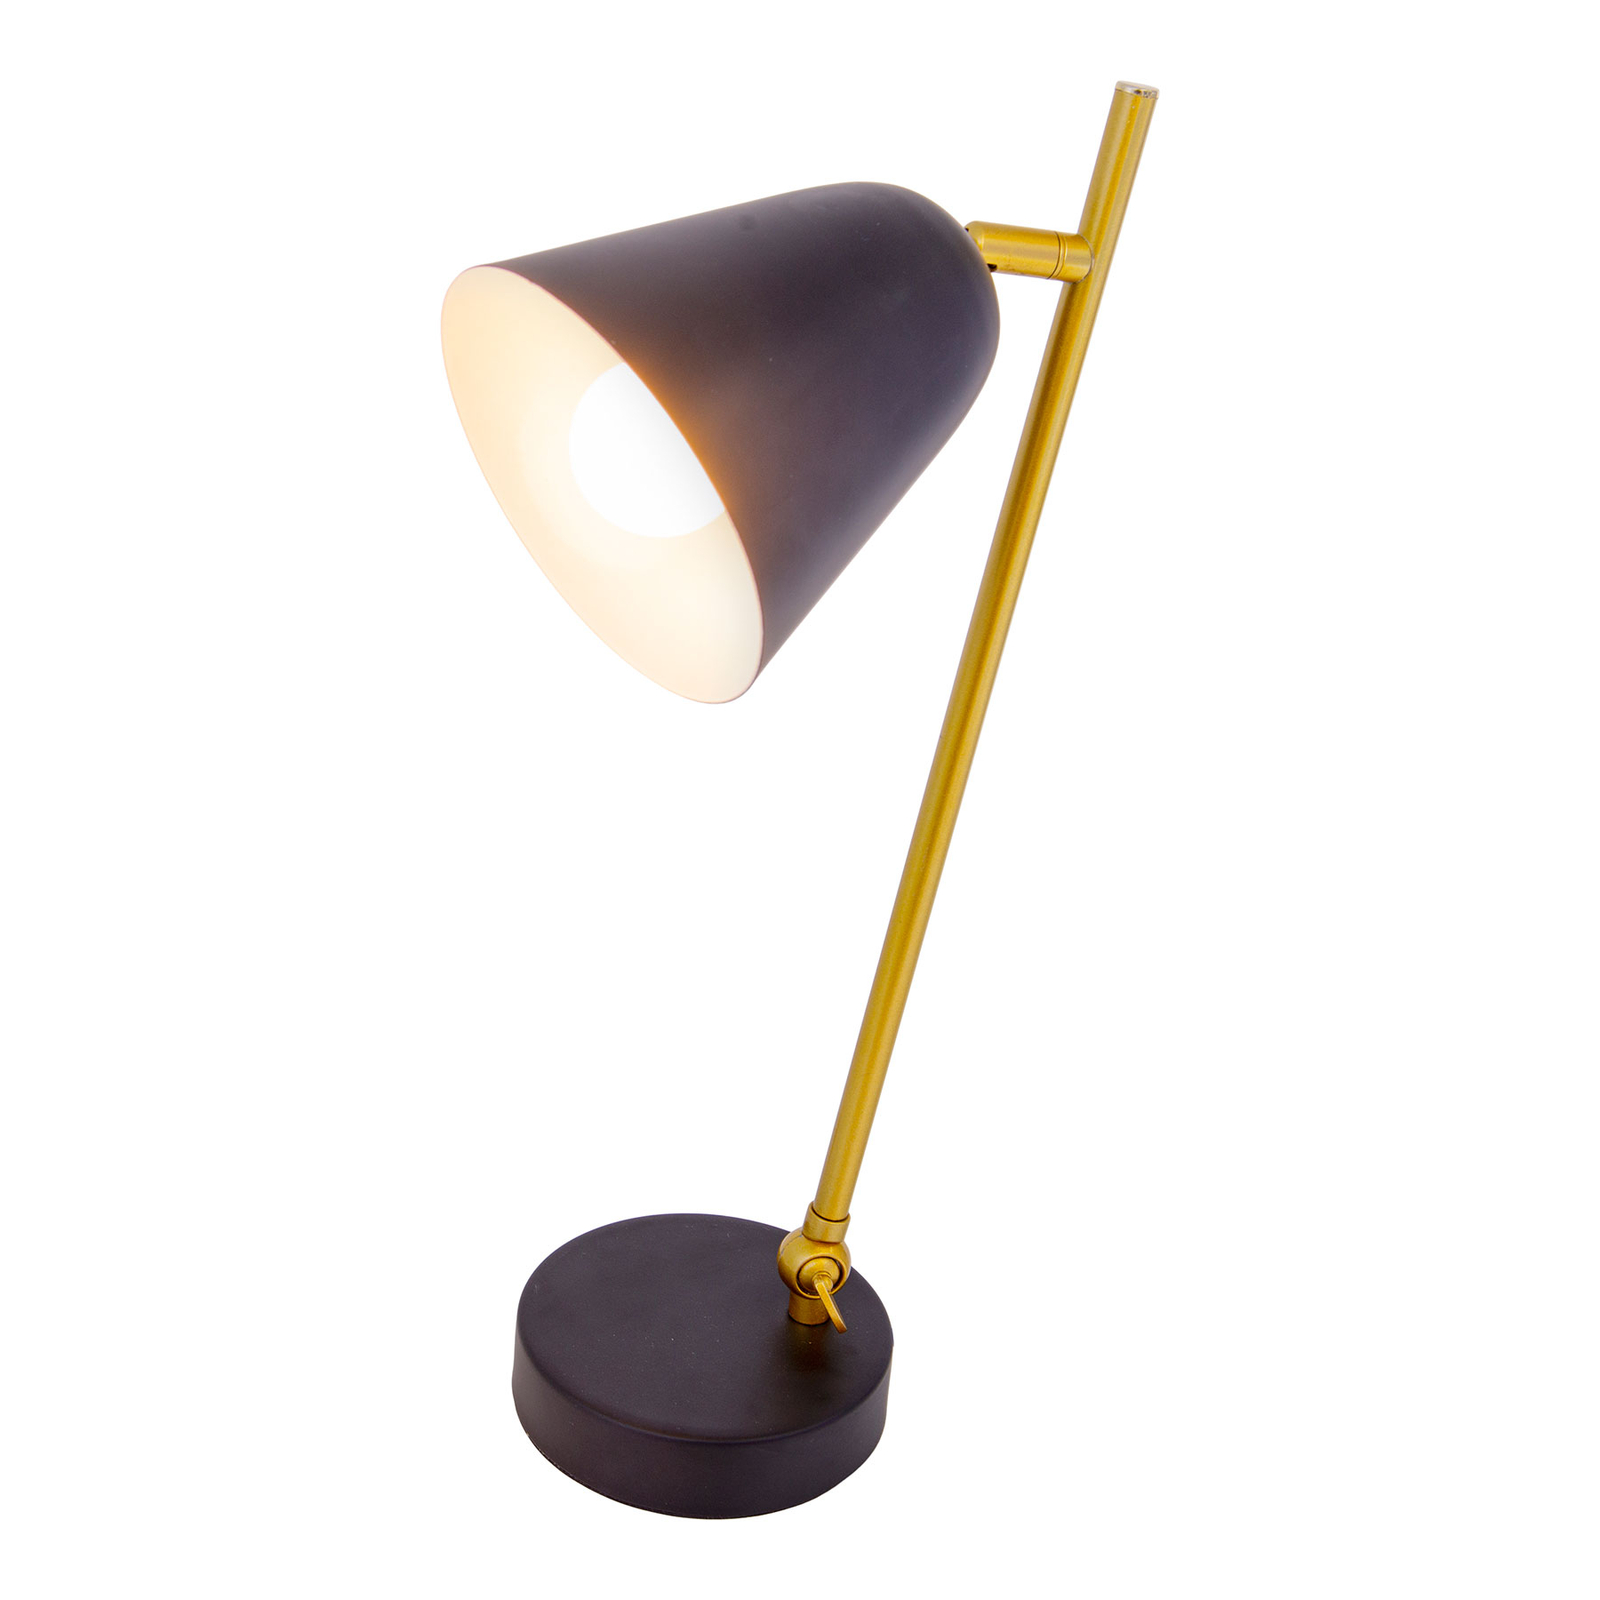 Triton stolna lampa u crnoj i zlatnoj boji